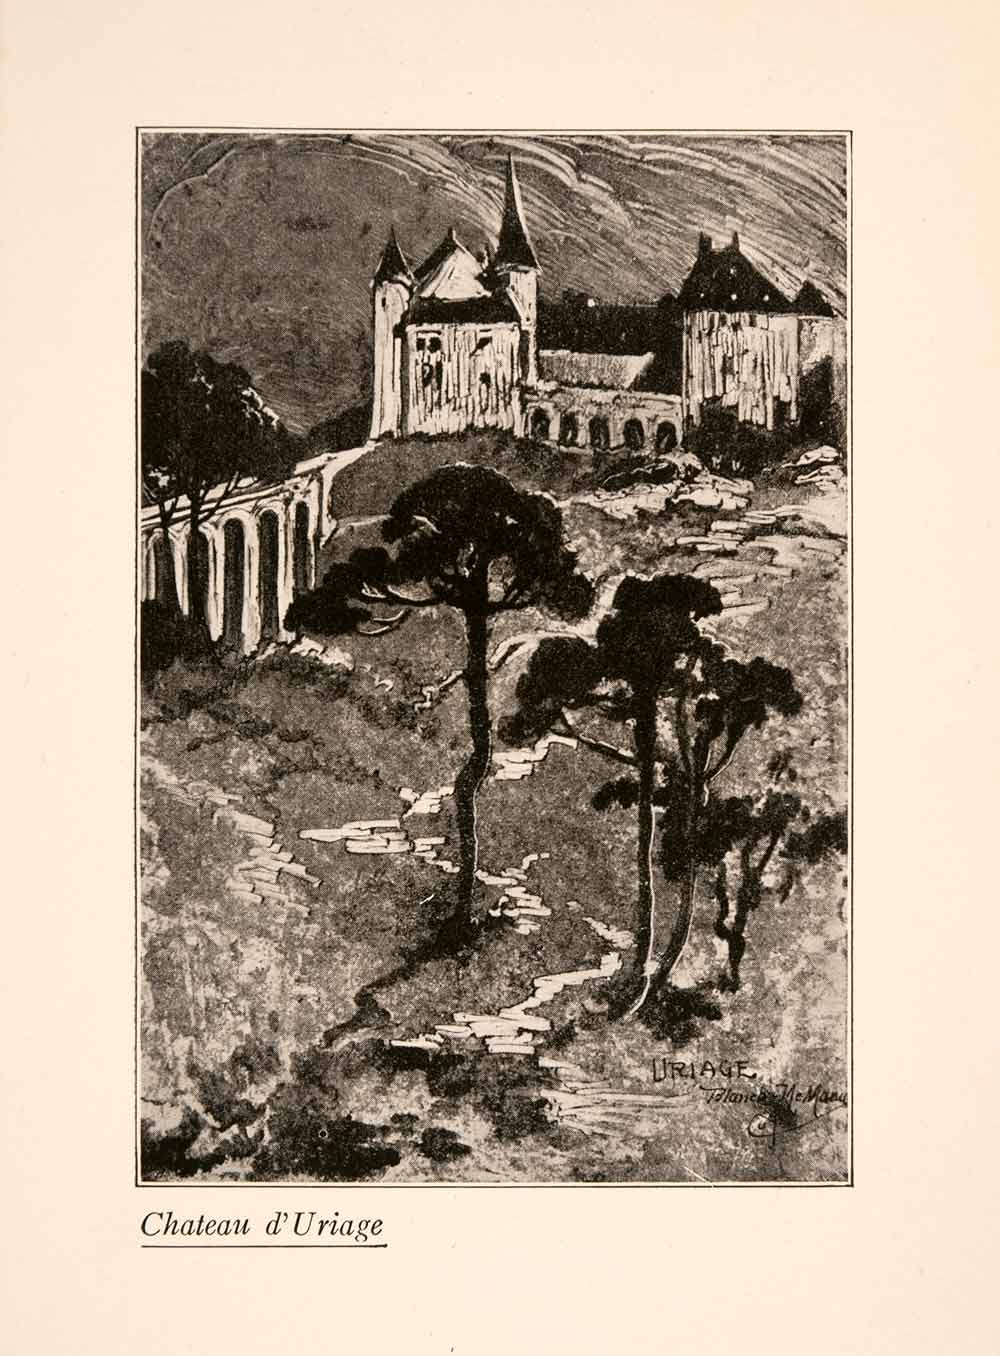 1929 Print Blanche McManus Chateau d'Uriage France Architecture Landscape XGLA1